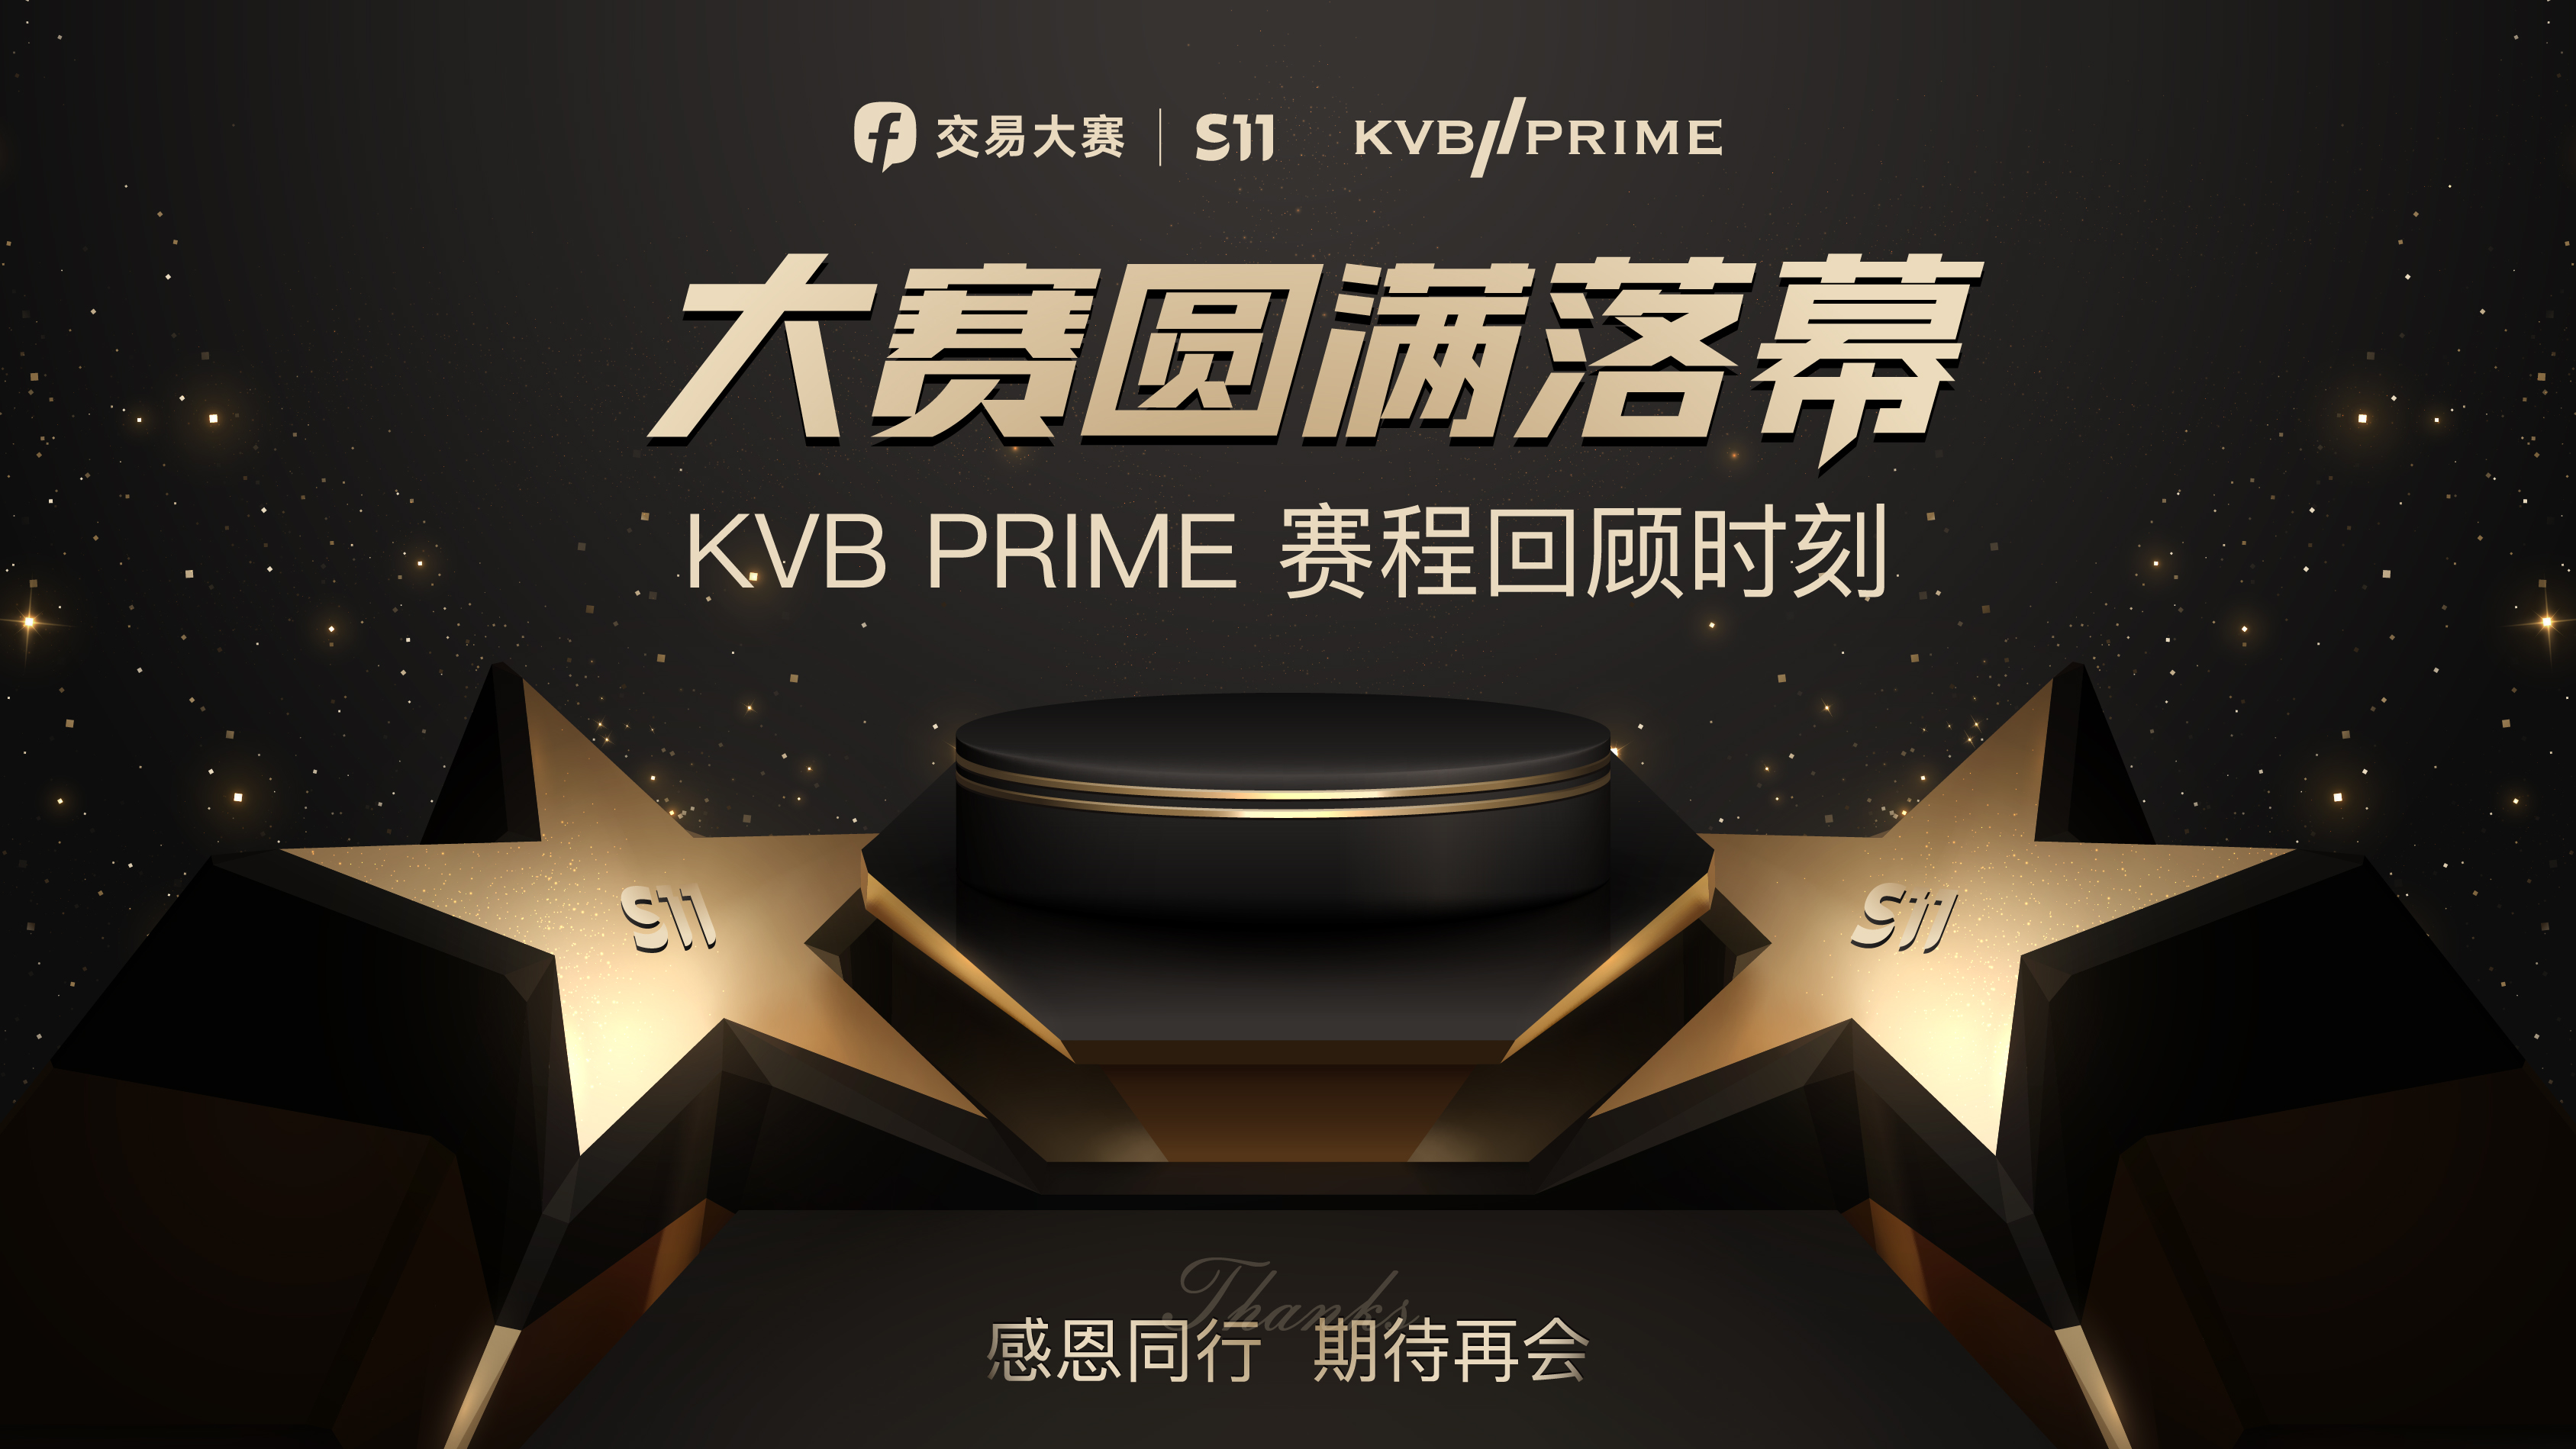 愿各位再创佳绩！KVB Prime 与 FOLLOWME 共度 S11 赛季